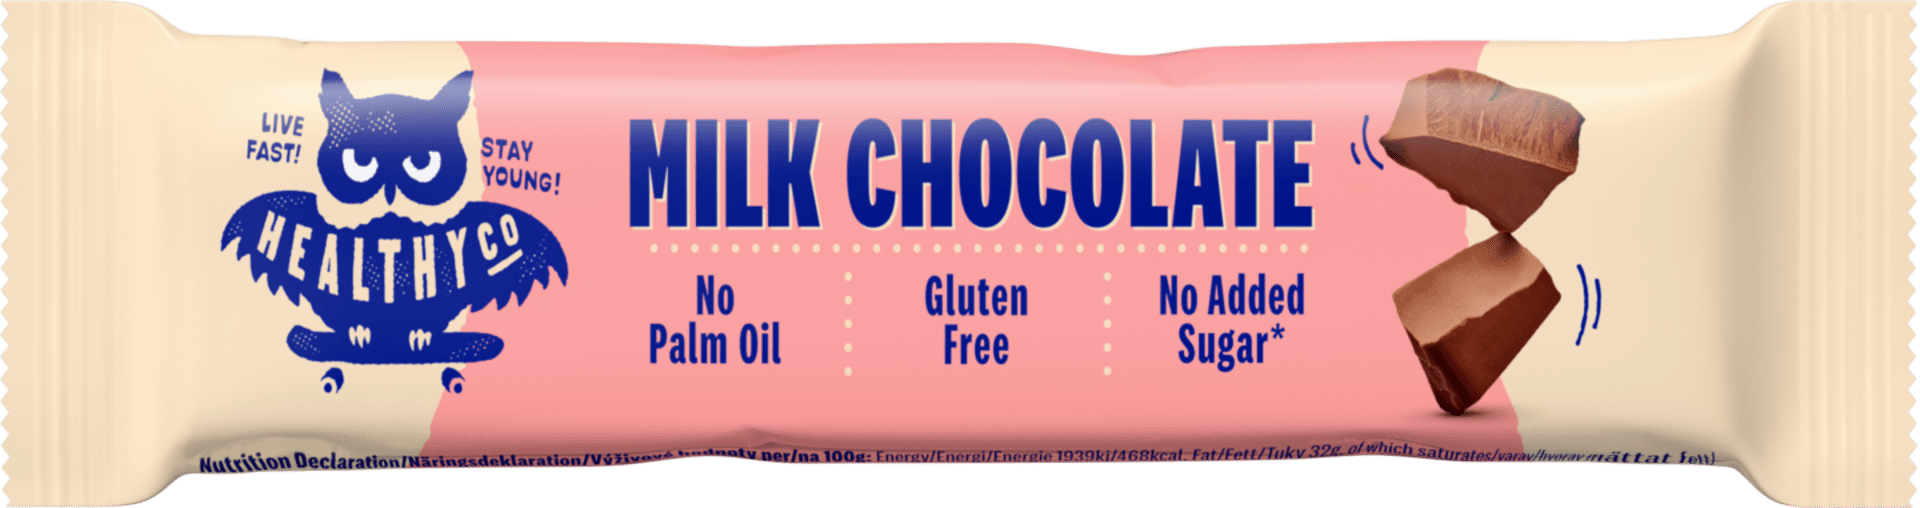 HealthyCo Milk Chocolate Bar 30 g expirace